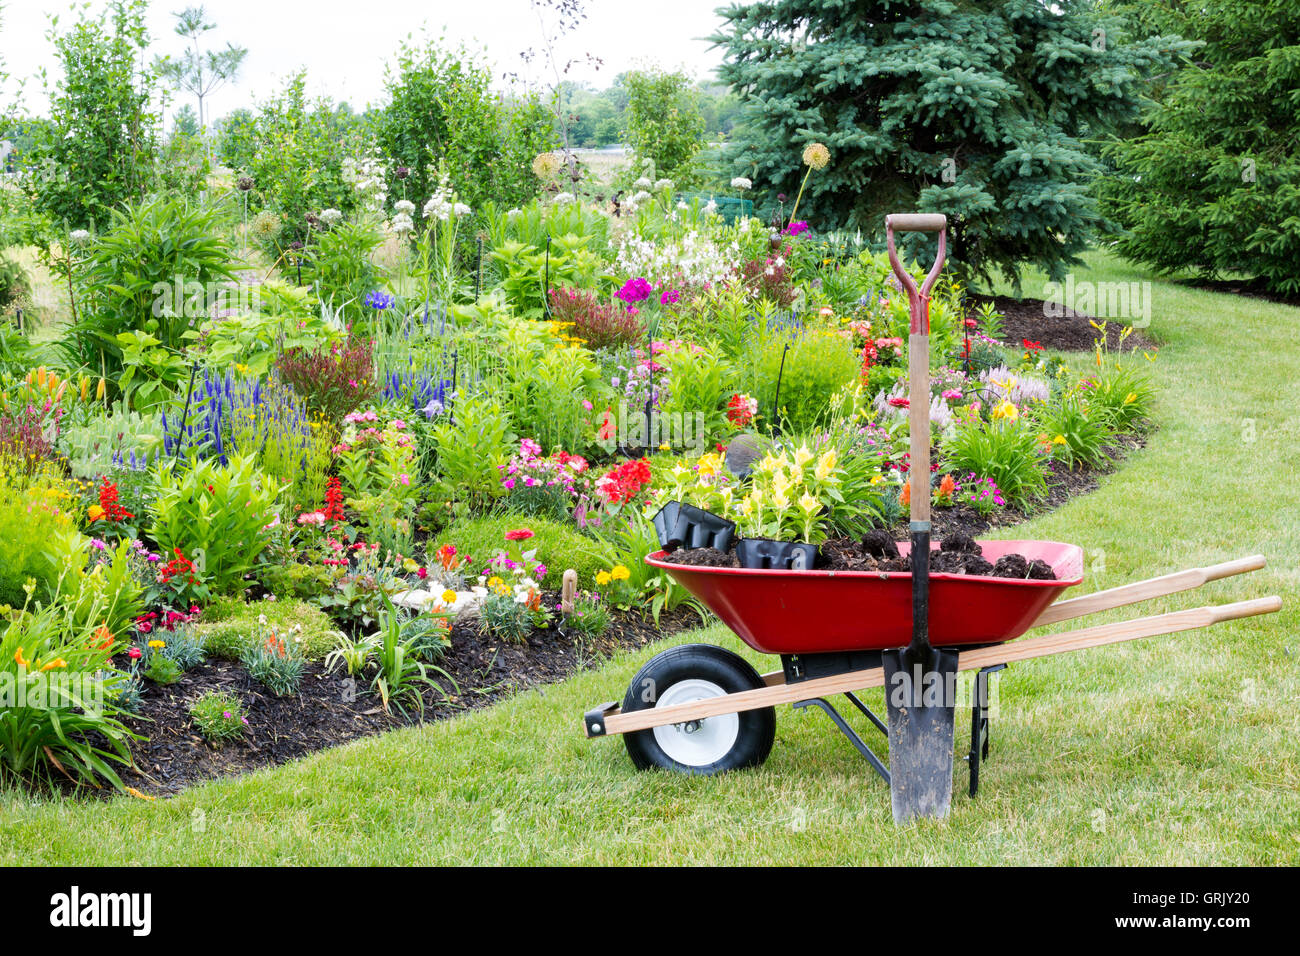 Arbeiten Sie auf dem Hof Landschaftsbau Garten mit einem roten Schubkarre stehen auf einer gepflegten Wiese neben einem neuen Flowerbed getan wird Stockfoto